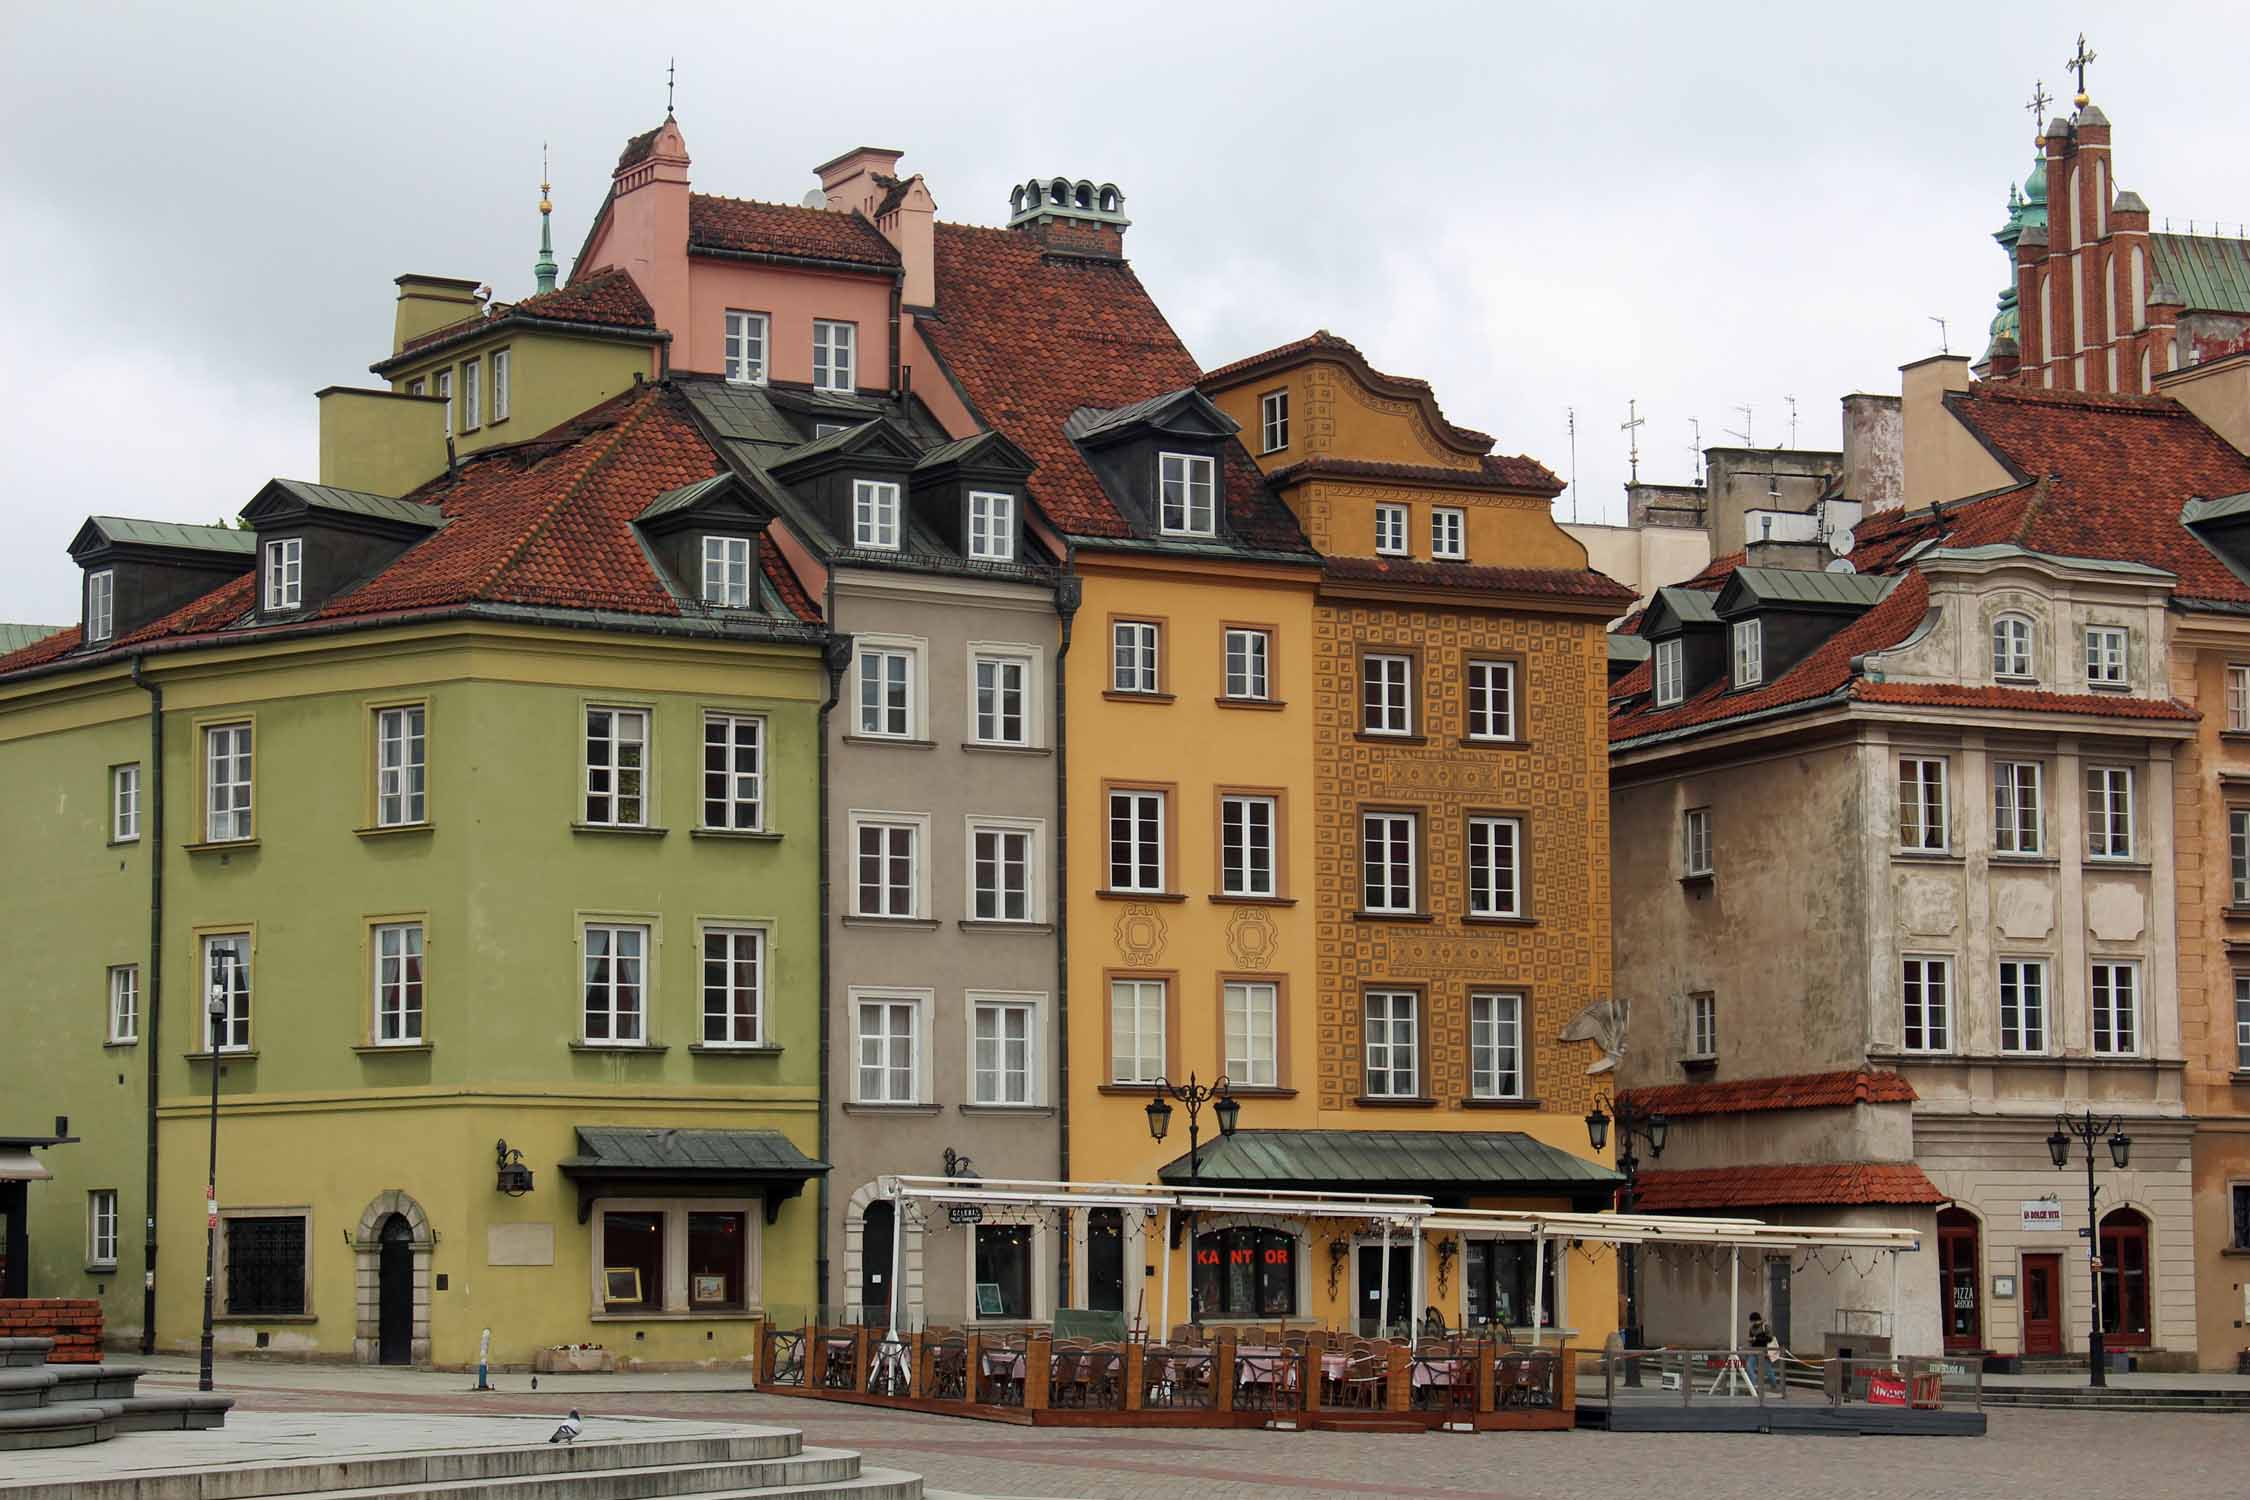 Varsovie, place Zamkovy, façades colorées